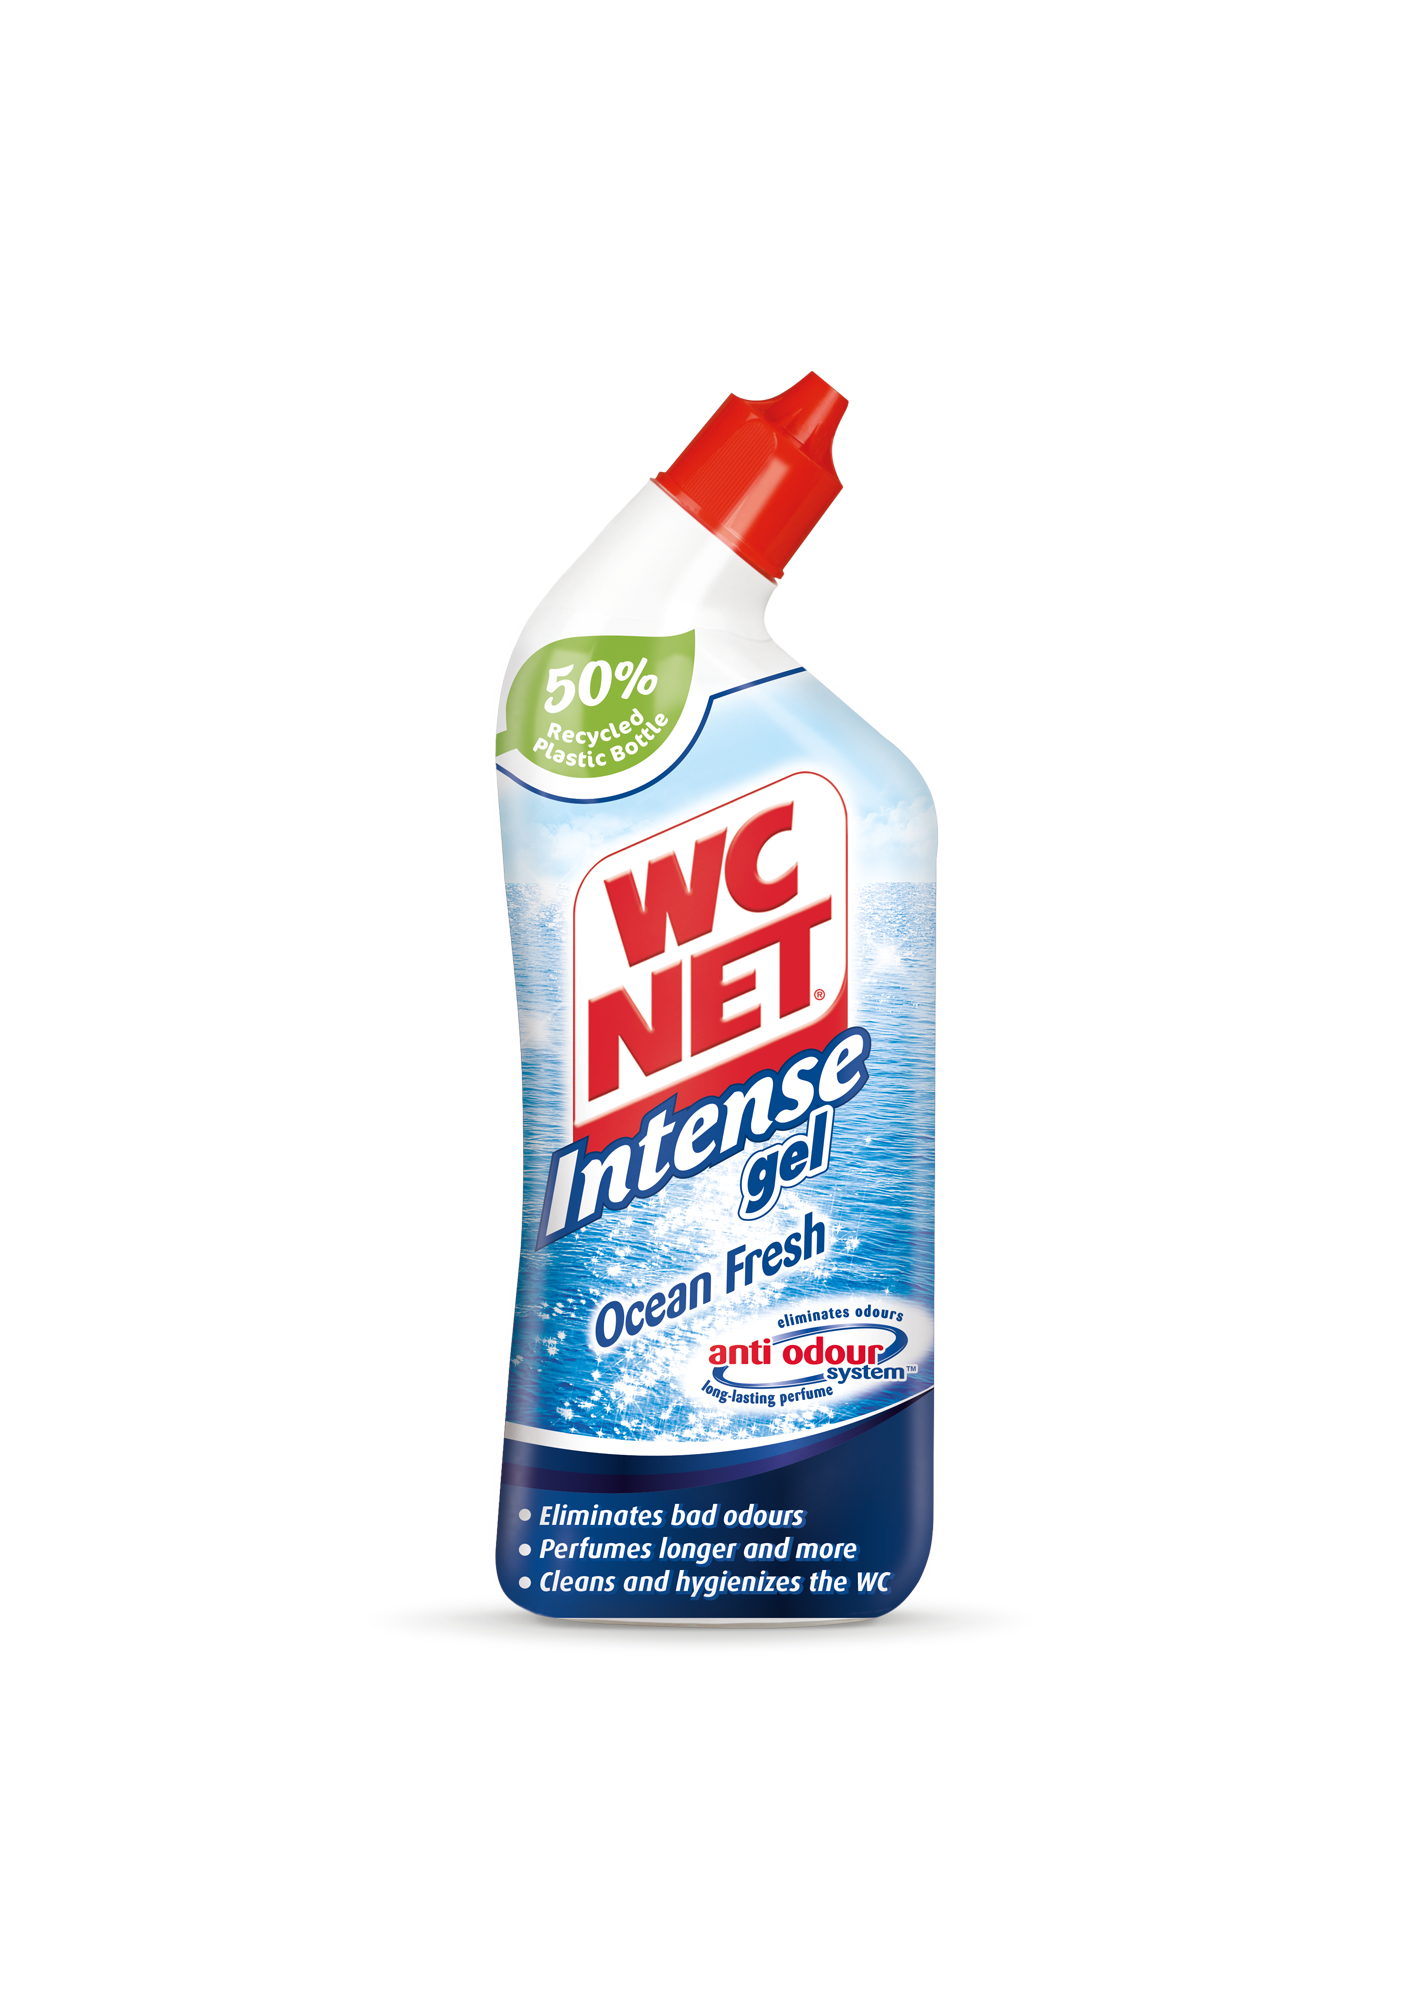 WC NET Intense Gel Ocean Fresh